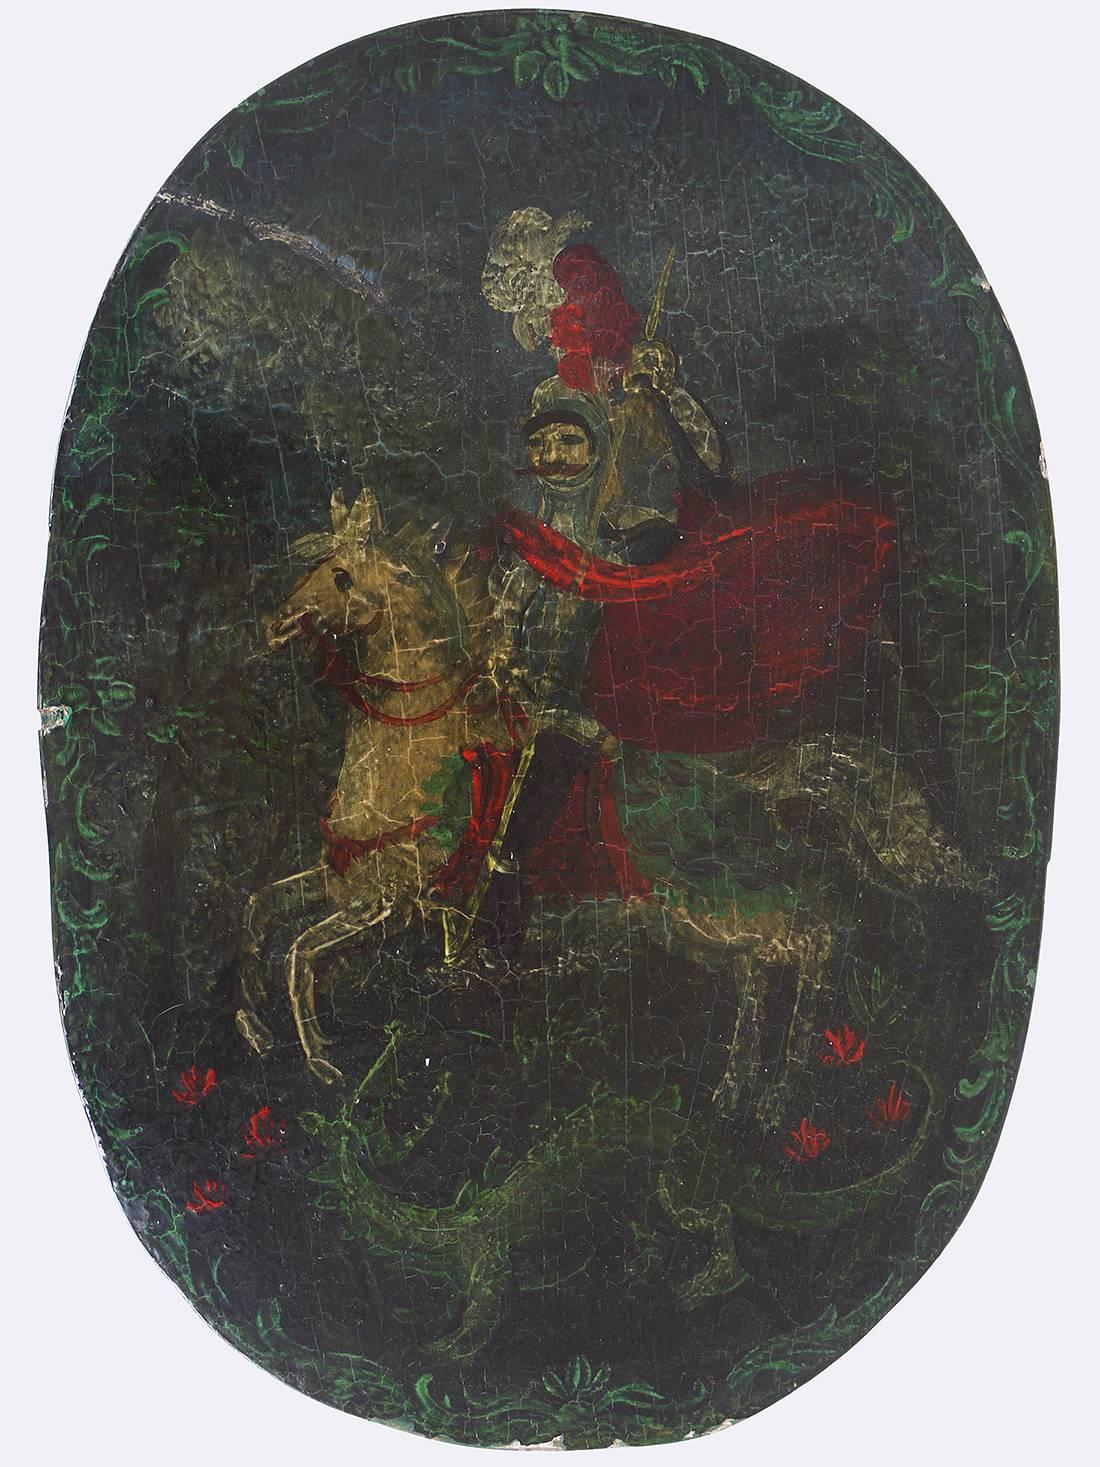 Antikes europäisches, bemaltes hölzernes Brautkästchen, das die berühmteste Legende vom Heiligen Georg, der einen Drachen tötet, zeigt.